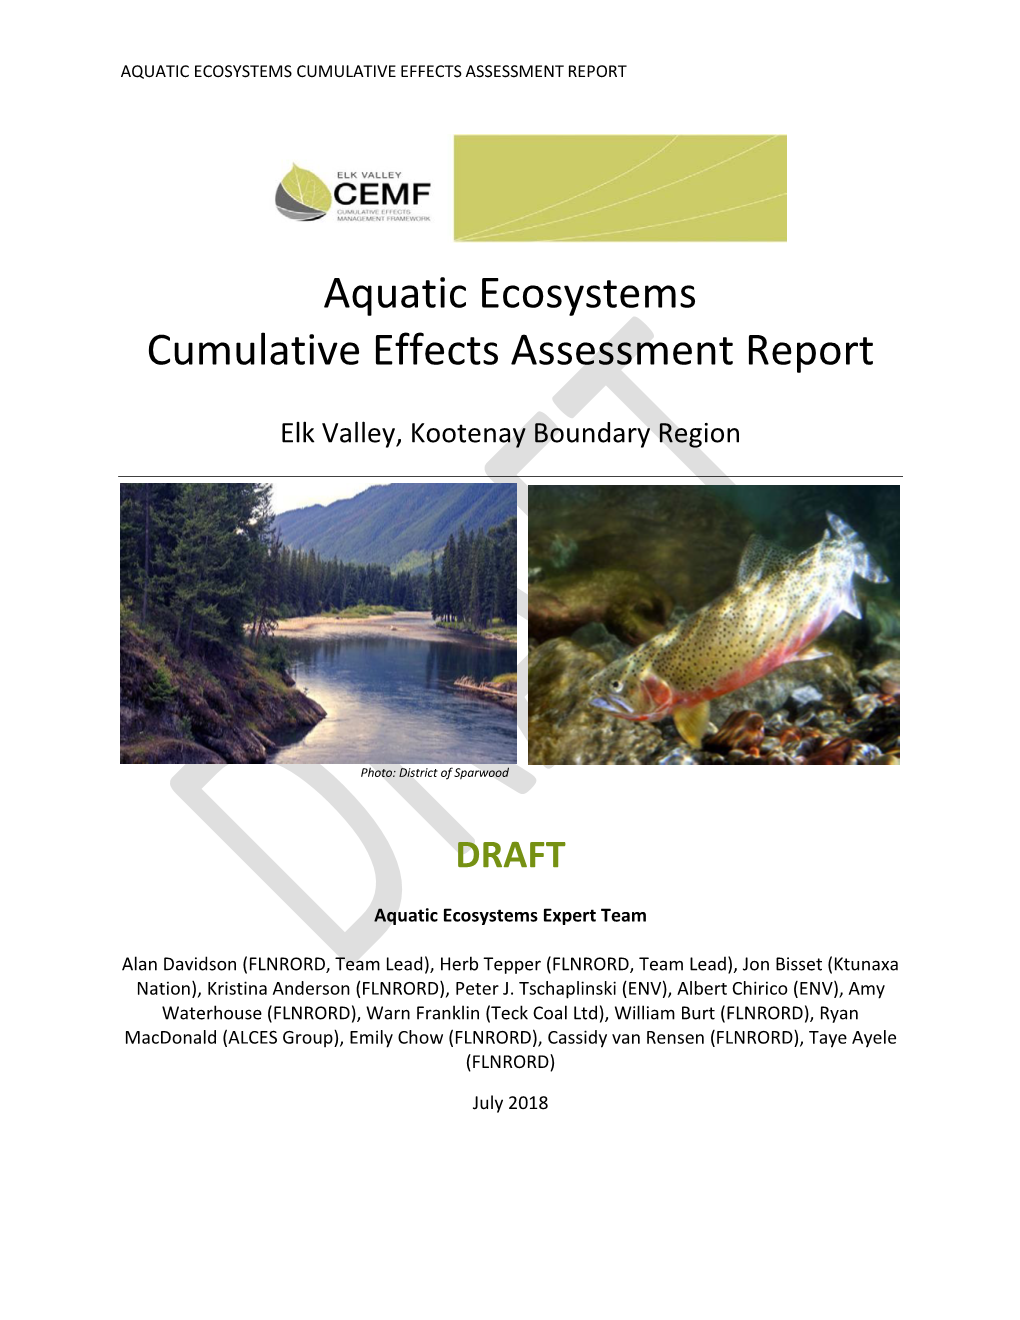 Aquatic Ecosystems Cumulative Effects Assessment Report